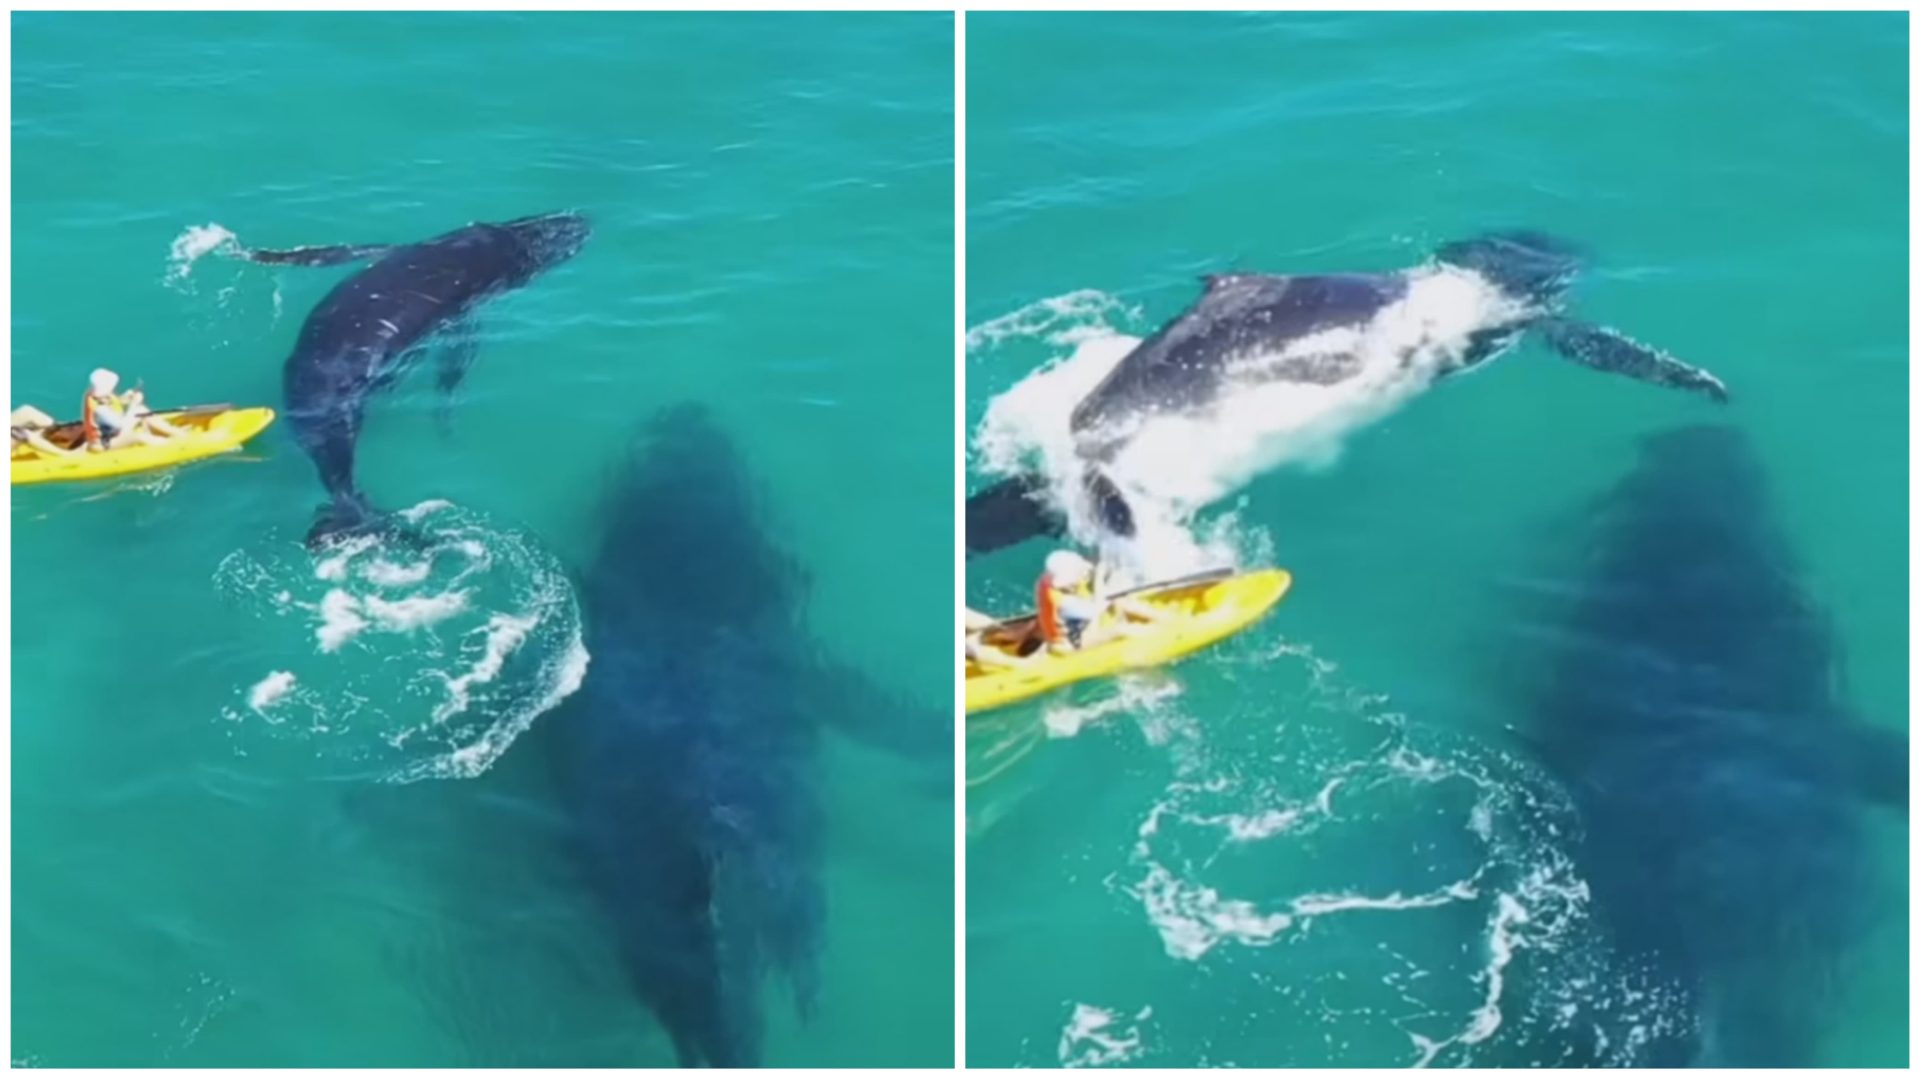 Baleias estavam nadando próximas aos canoístas - Foto: Reprodução/Instagram/@issydphoto